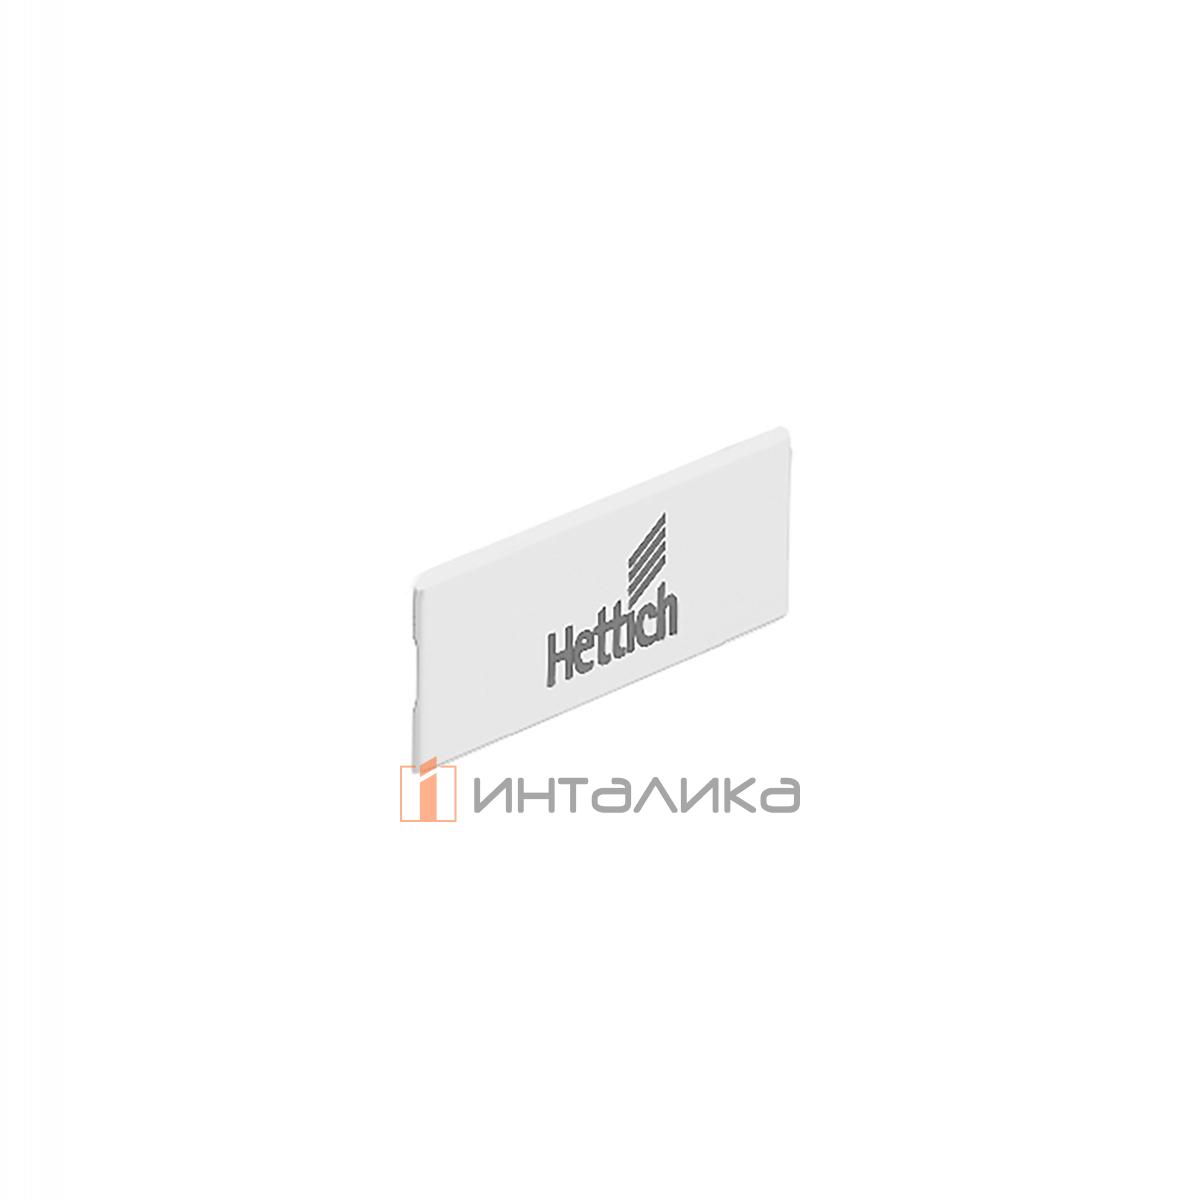 Заглушка для ящика HETTICH InnoTech Atira с лого Hettich, пластик, цвет белый, (V300)